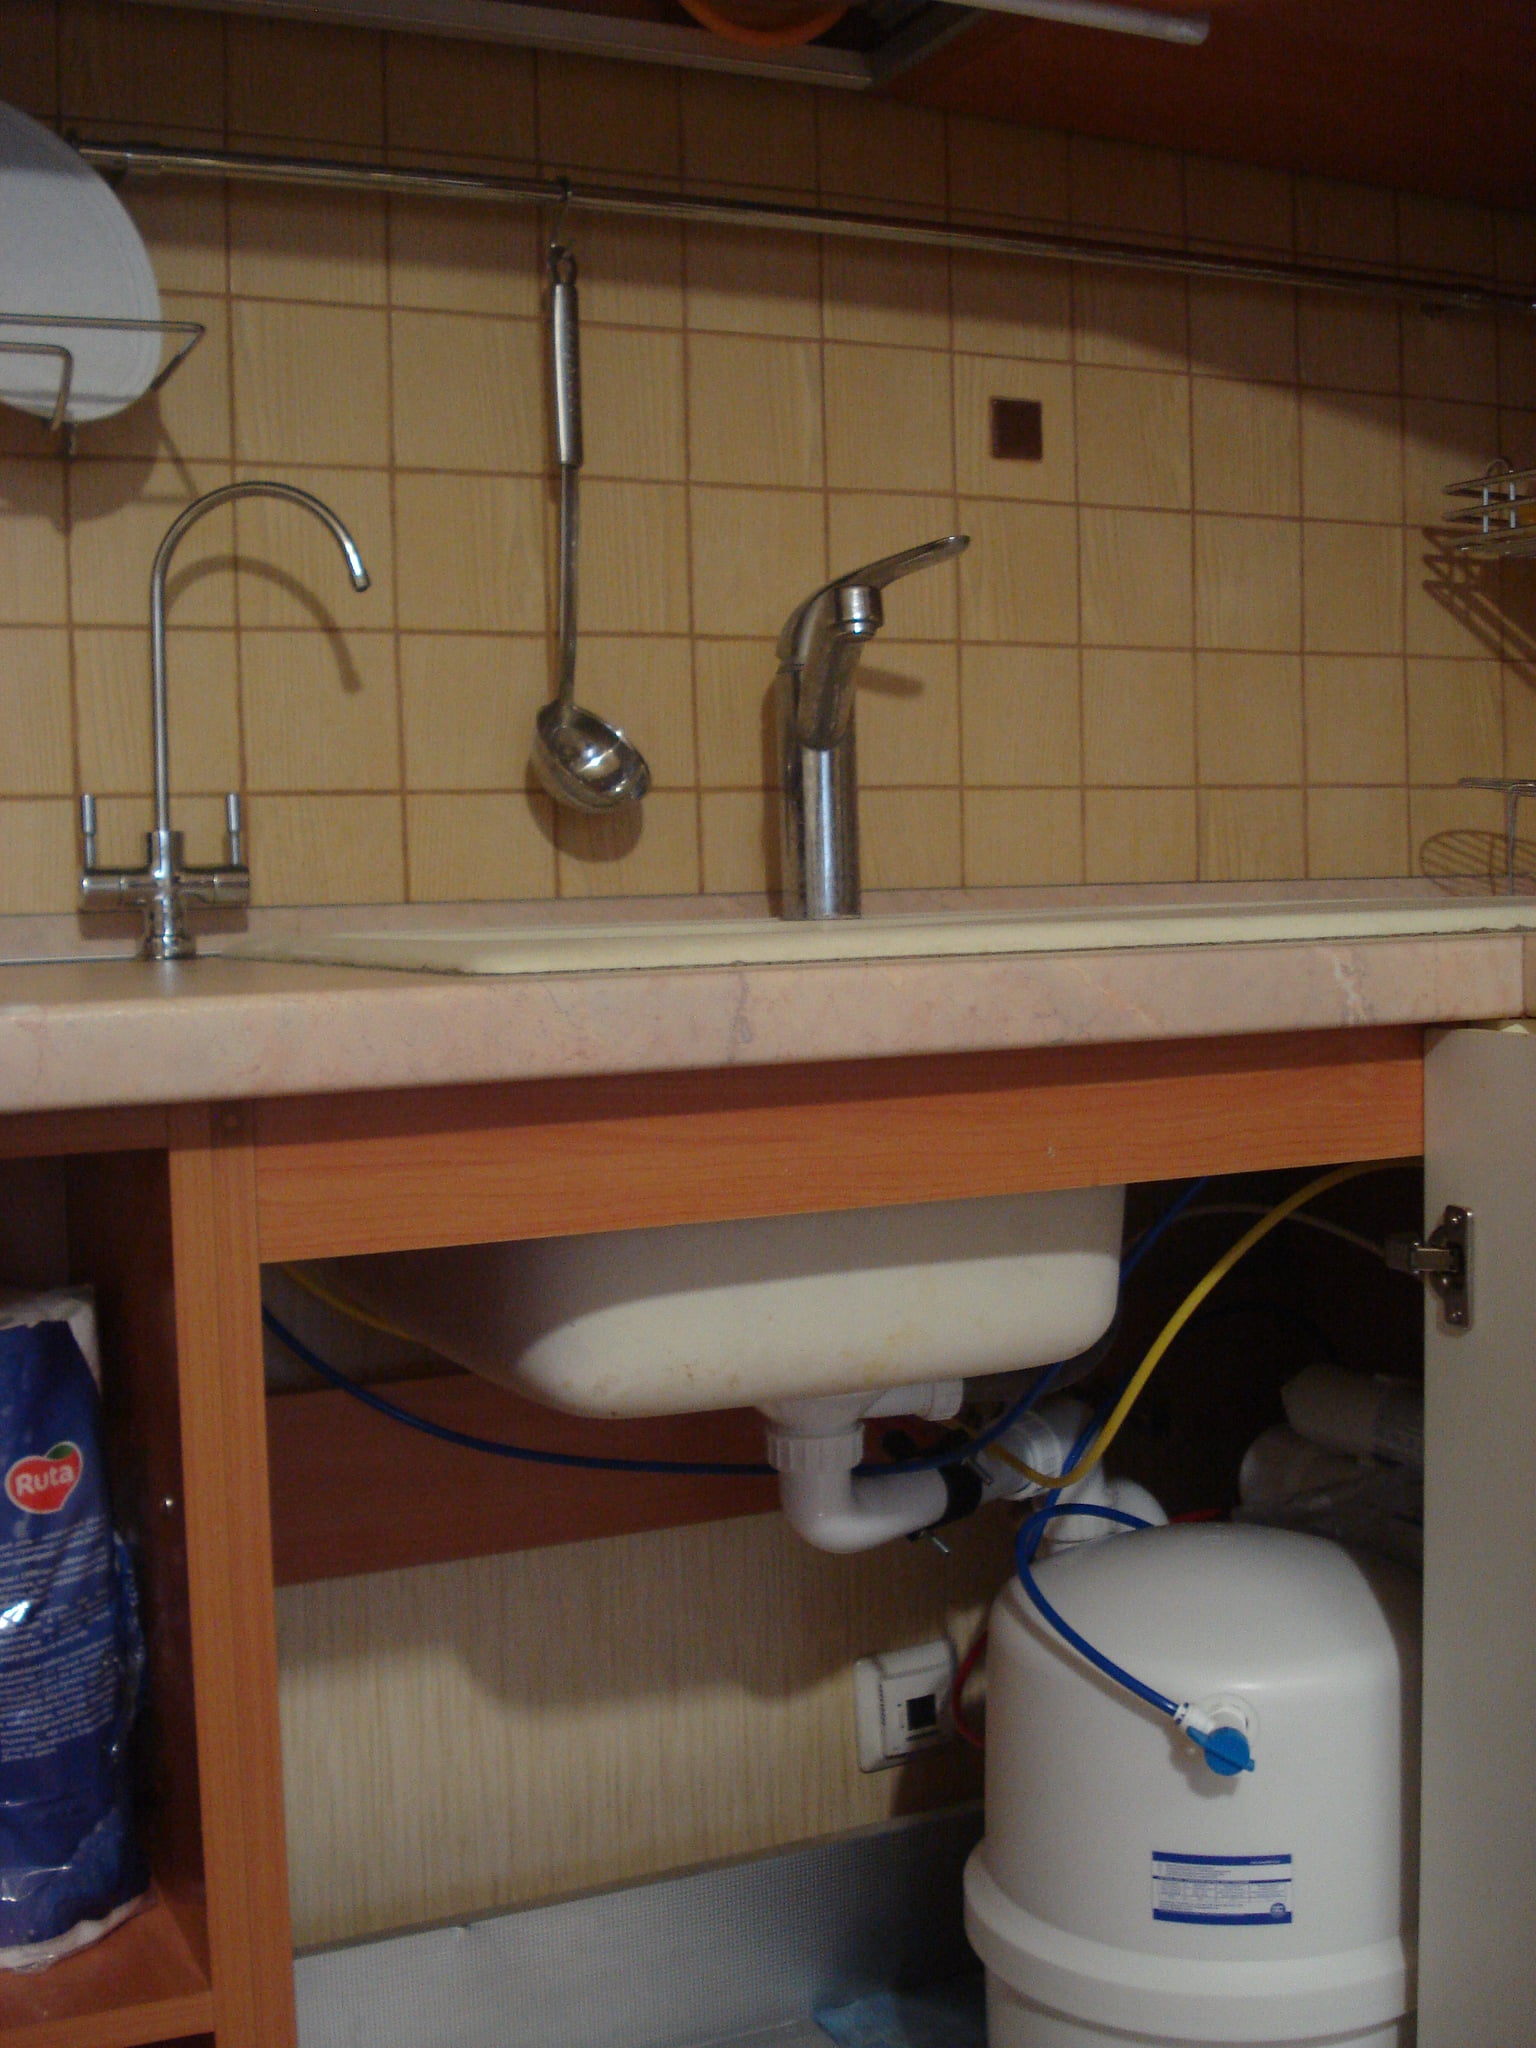 установка фильтров для очистки воды на кухню под мойку